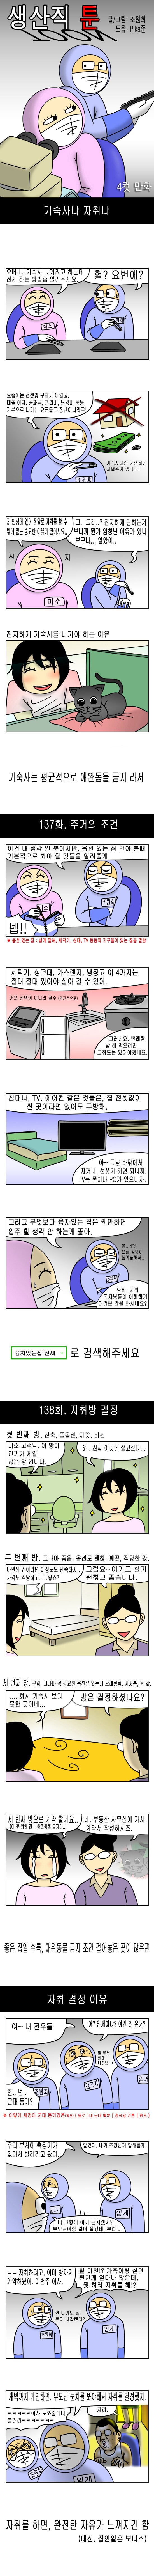 남녀가 자취방을 구하는 이유.manhwa